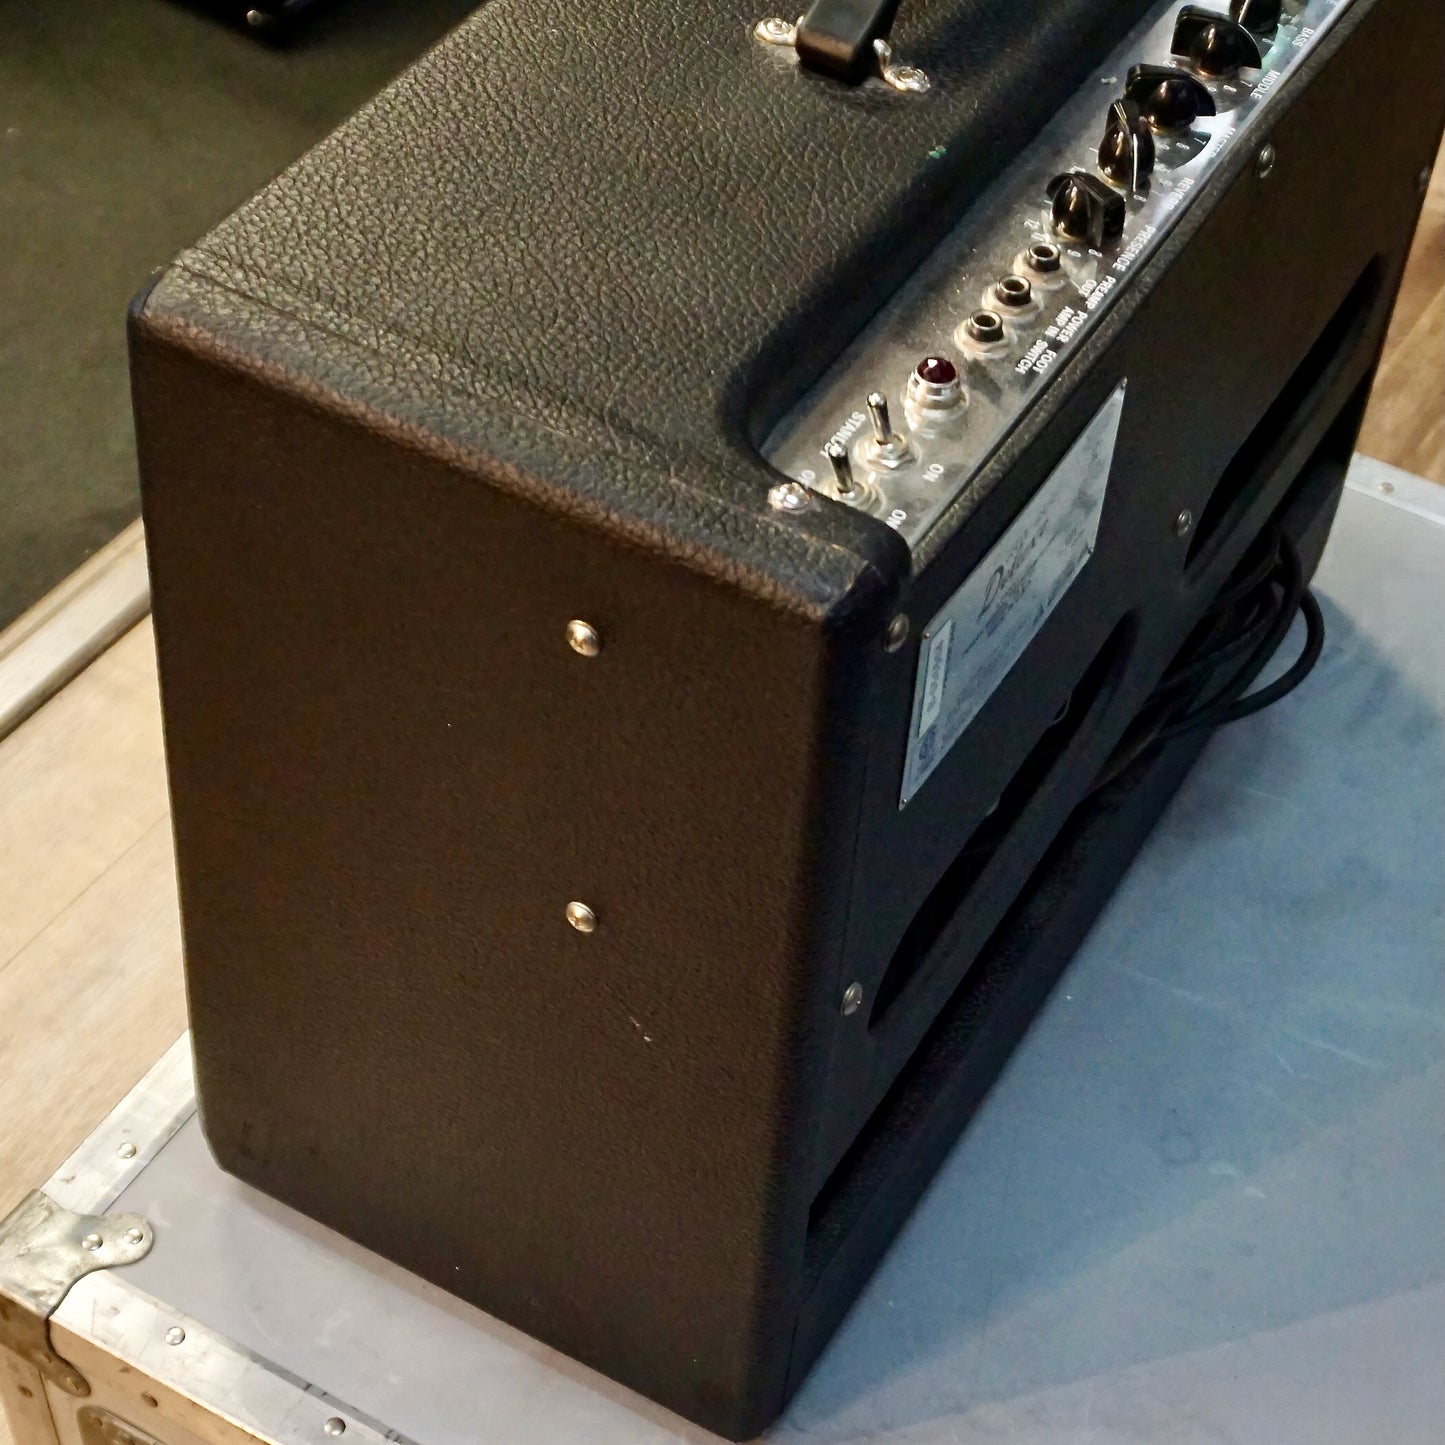 Fender Hot Rod Deluxe IV Black 120V